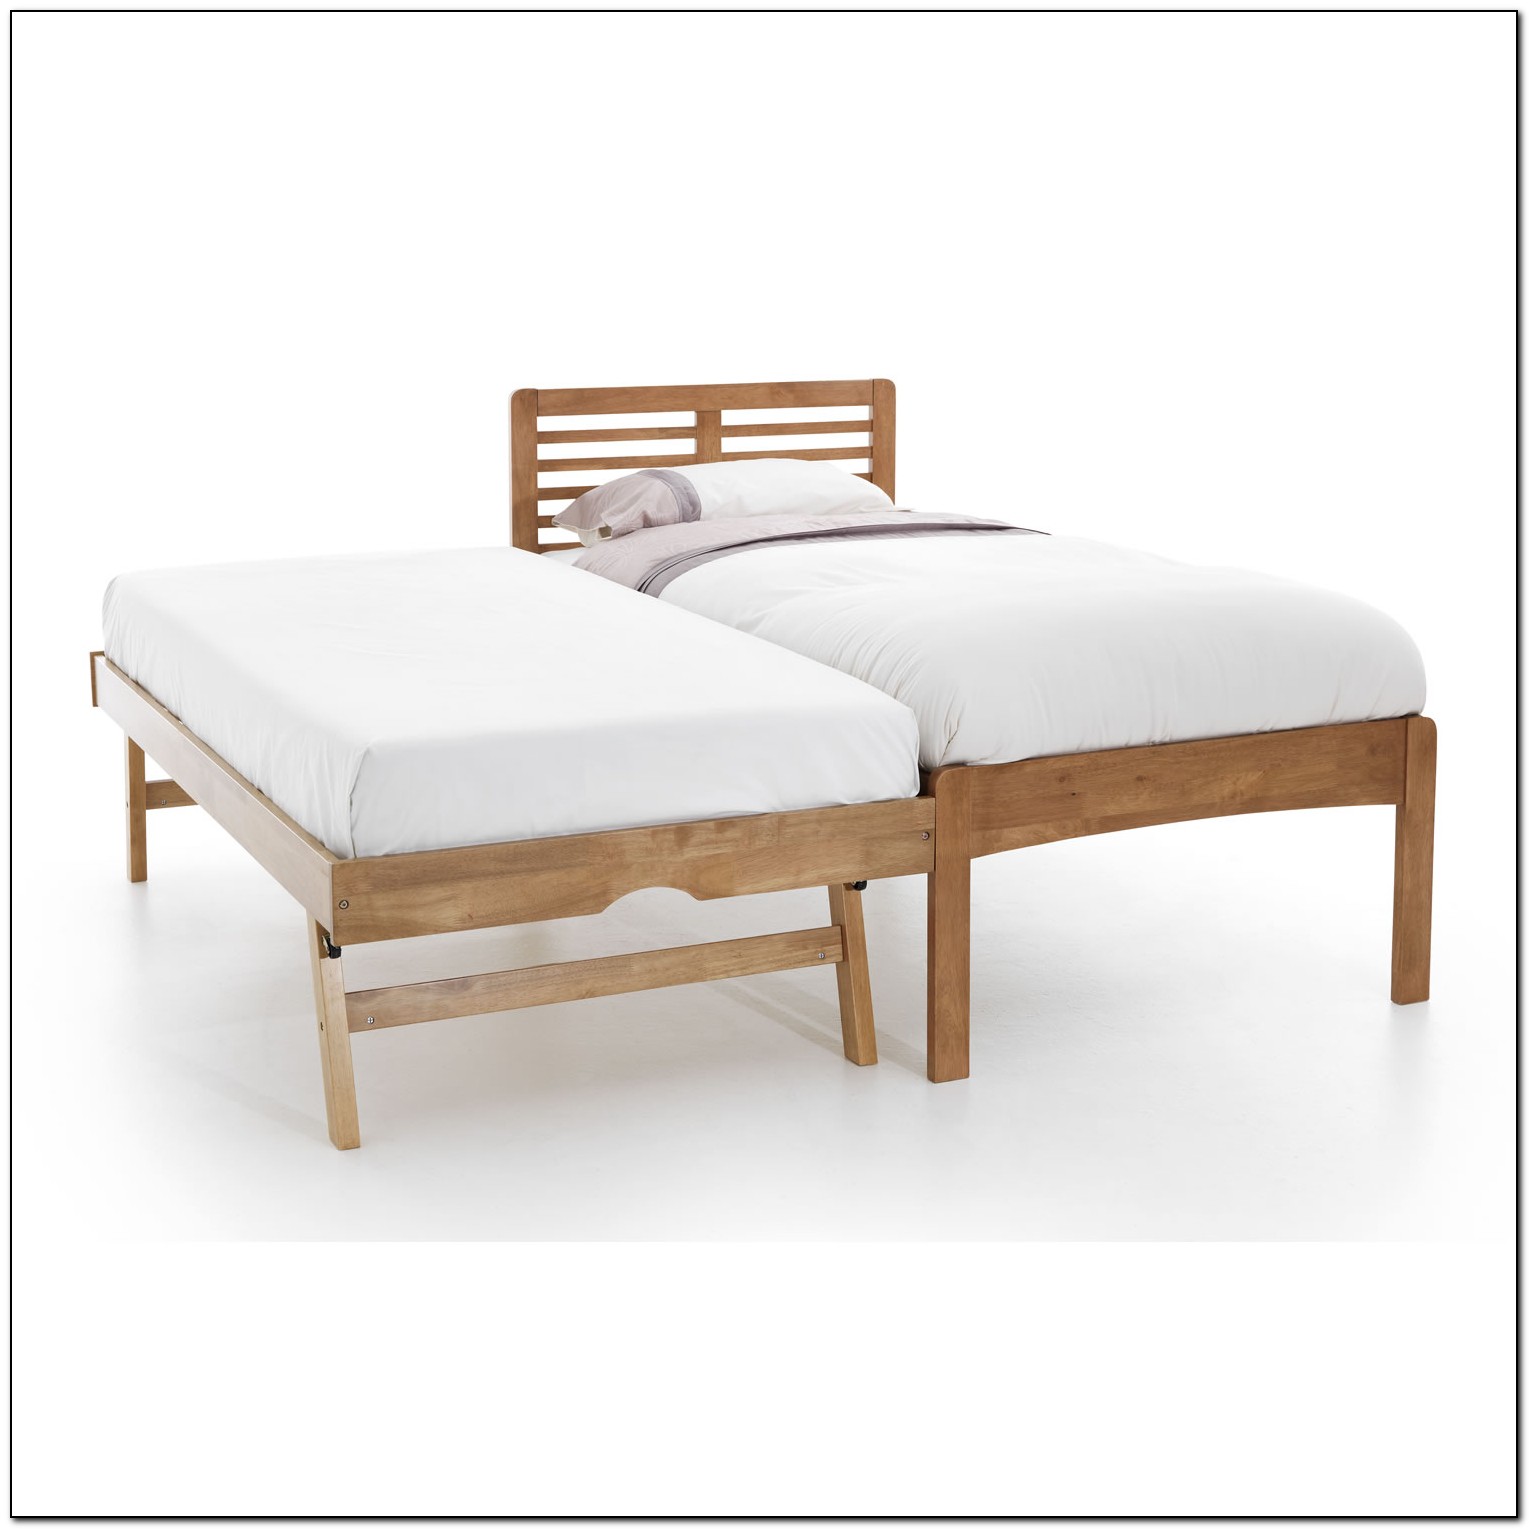 Wooden Trundle Bed Frame